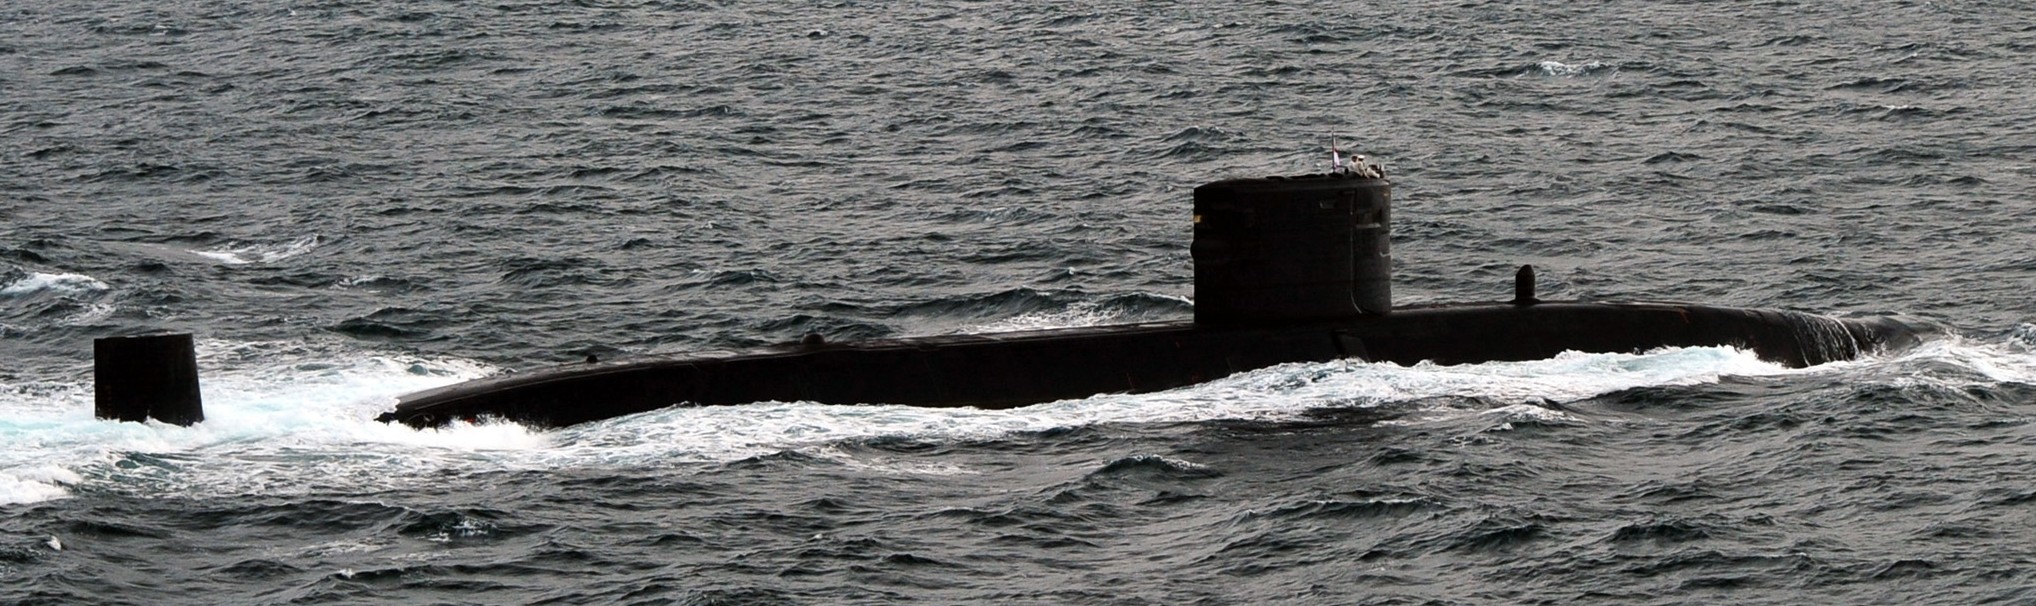 s90 hms torbay trafalgar class attack submarine hunter killer royal navy 02